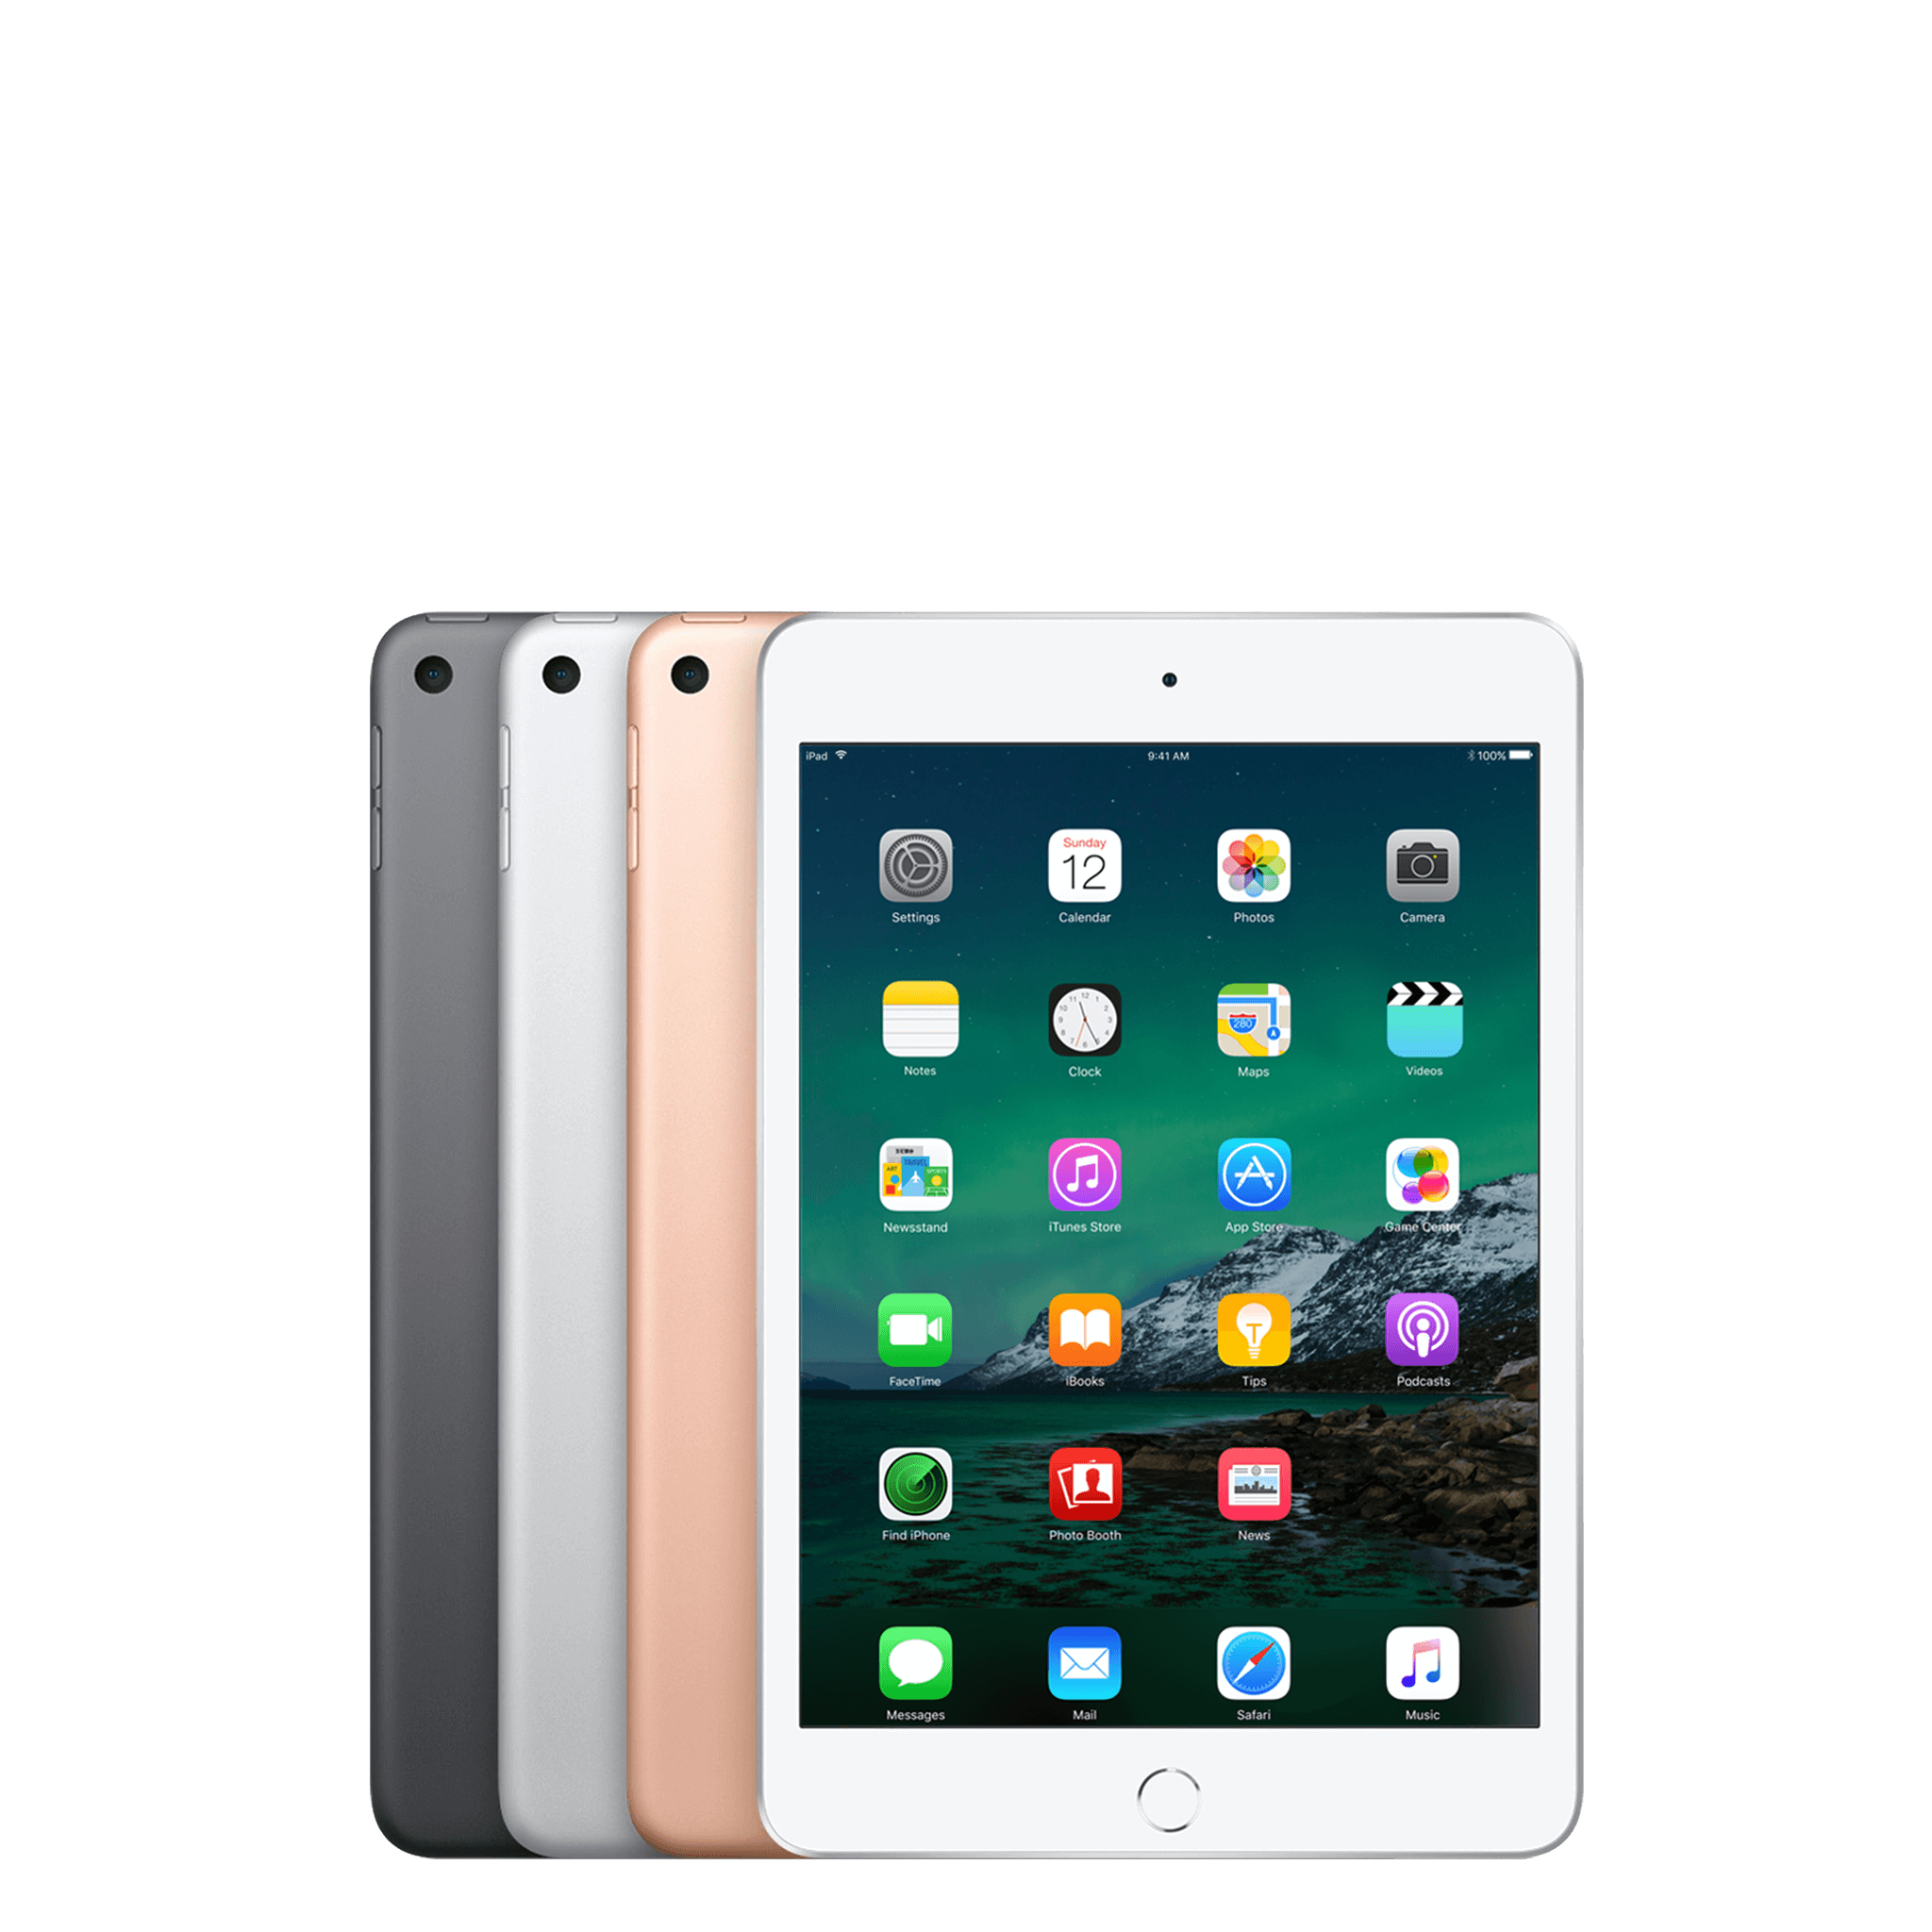 Đánh giá iPad Mini 5 So sánh, hiệu năng, màn hình, camera, thiết kế, pin, giá cả